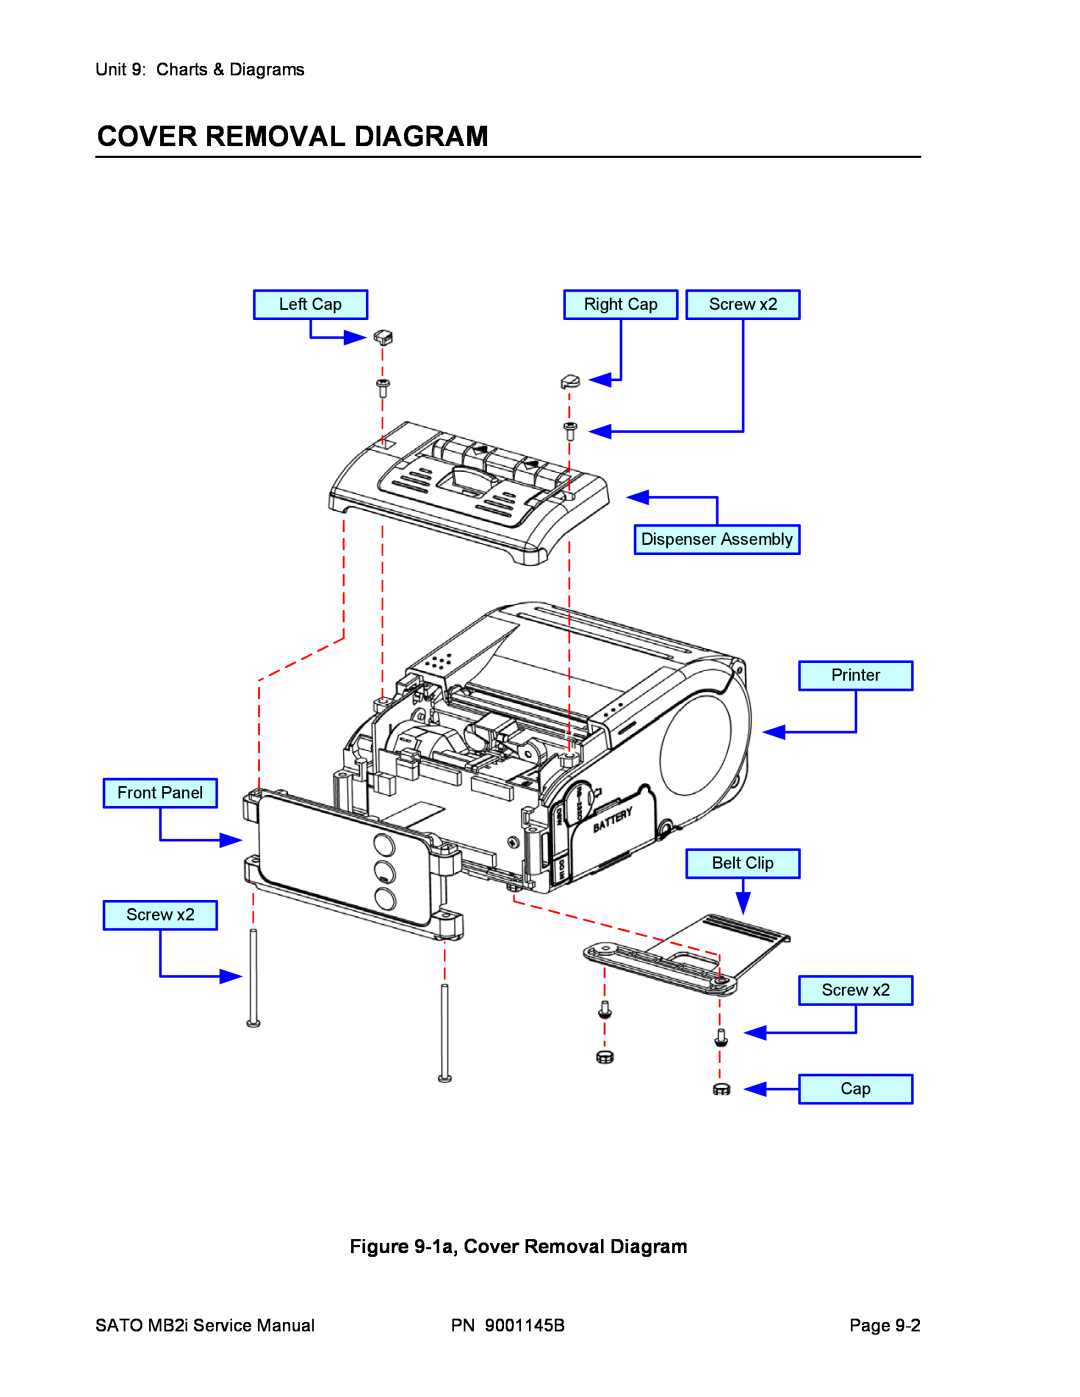 SATO 200i manual 1a, Cover Removal Diagram 